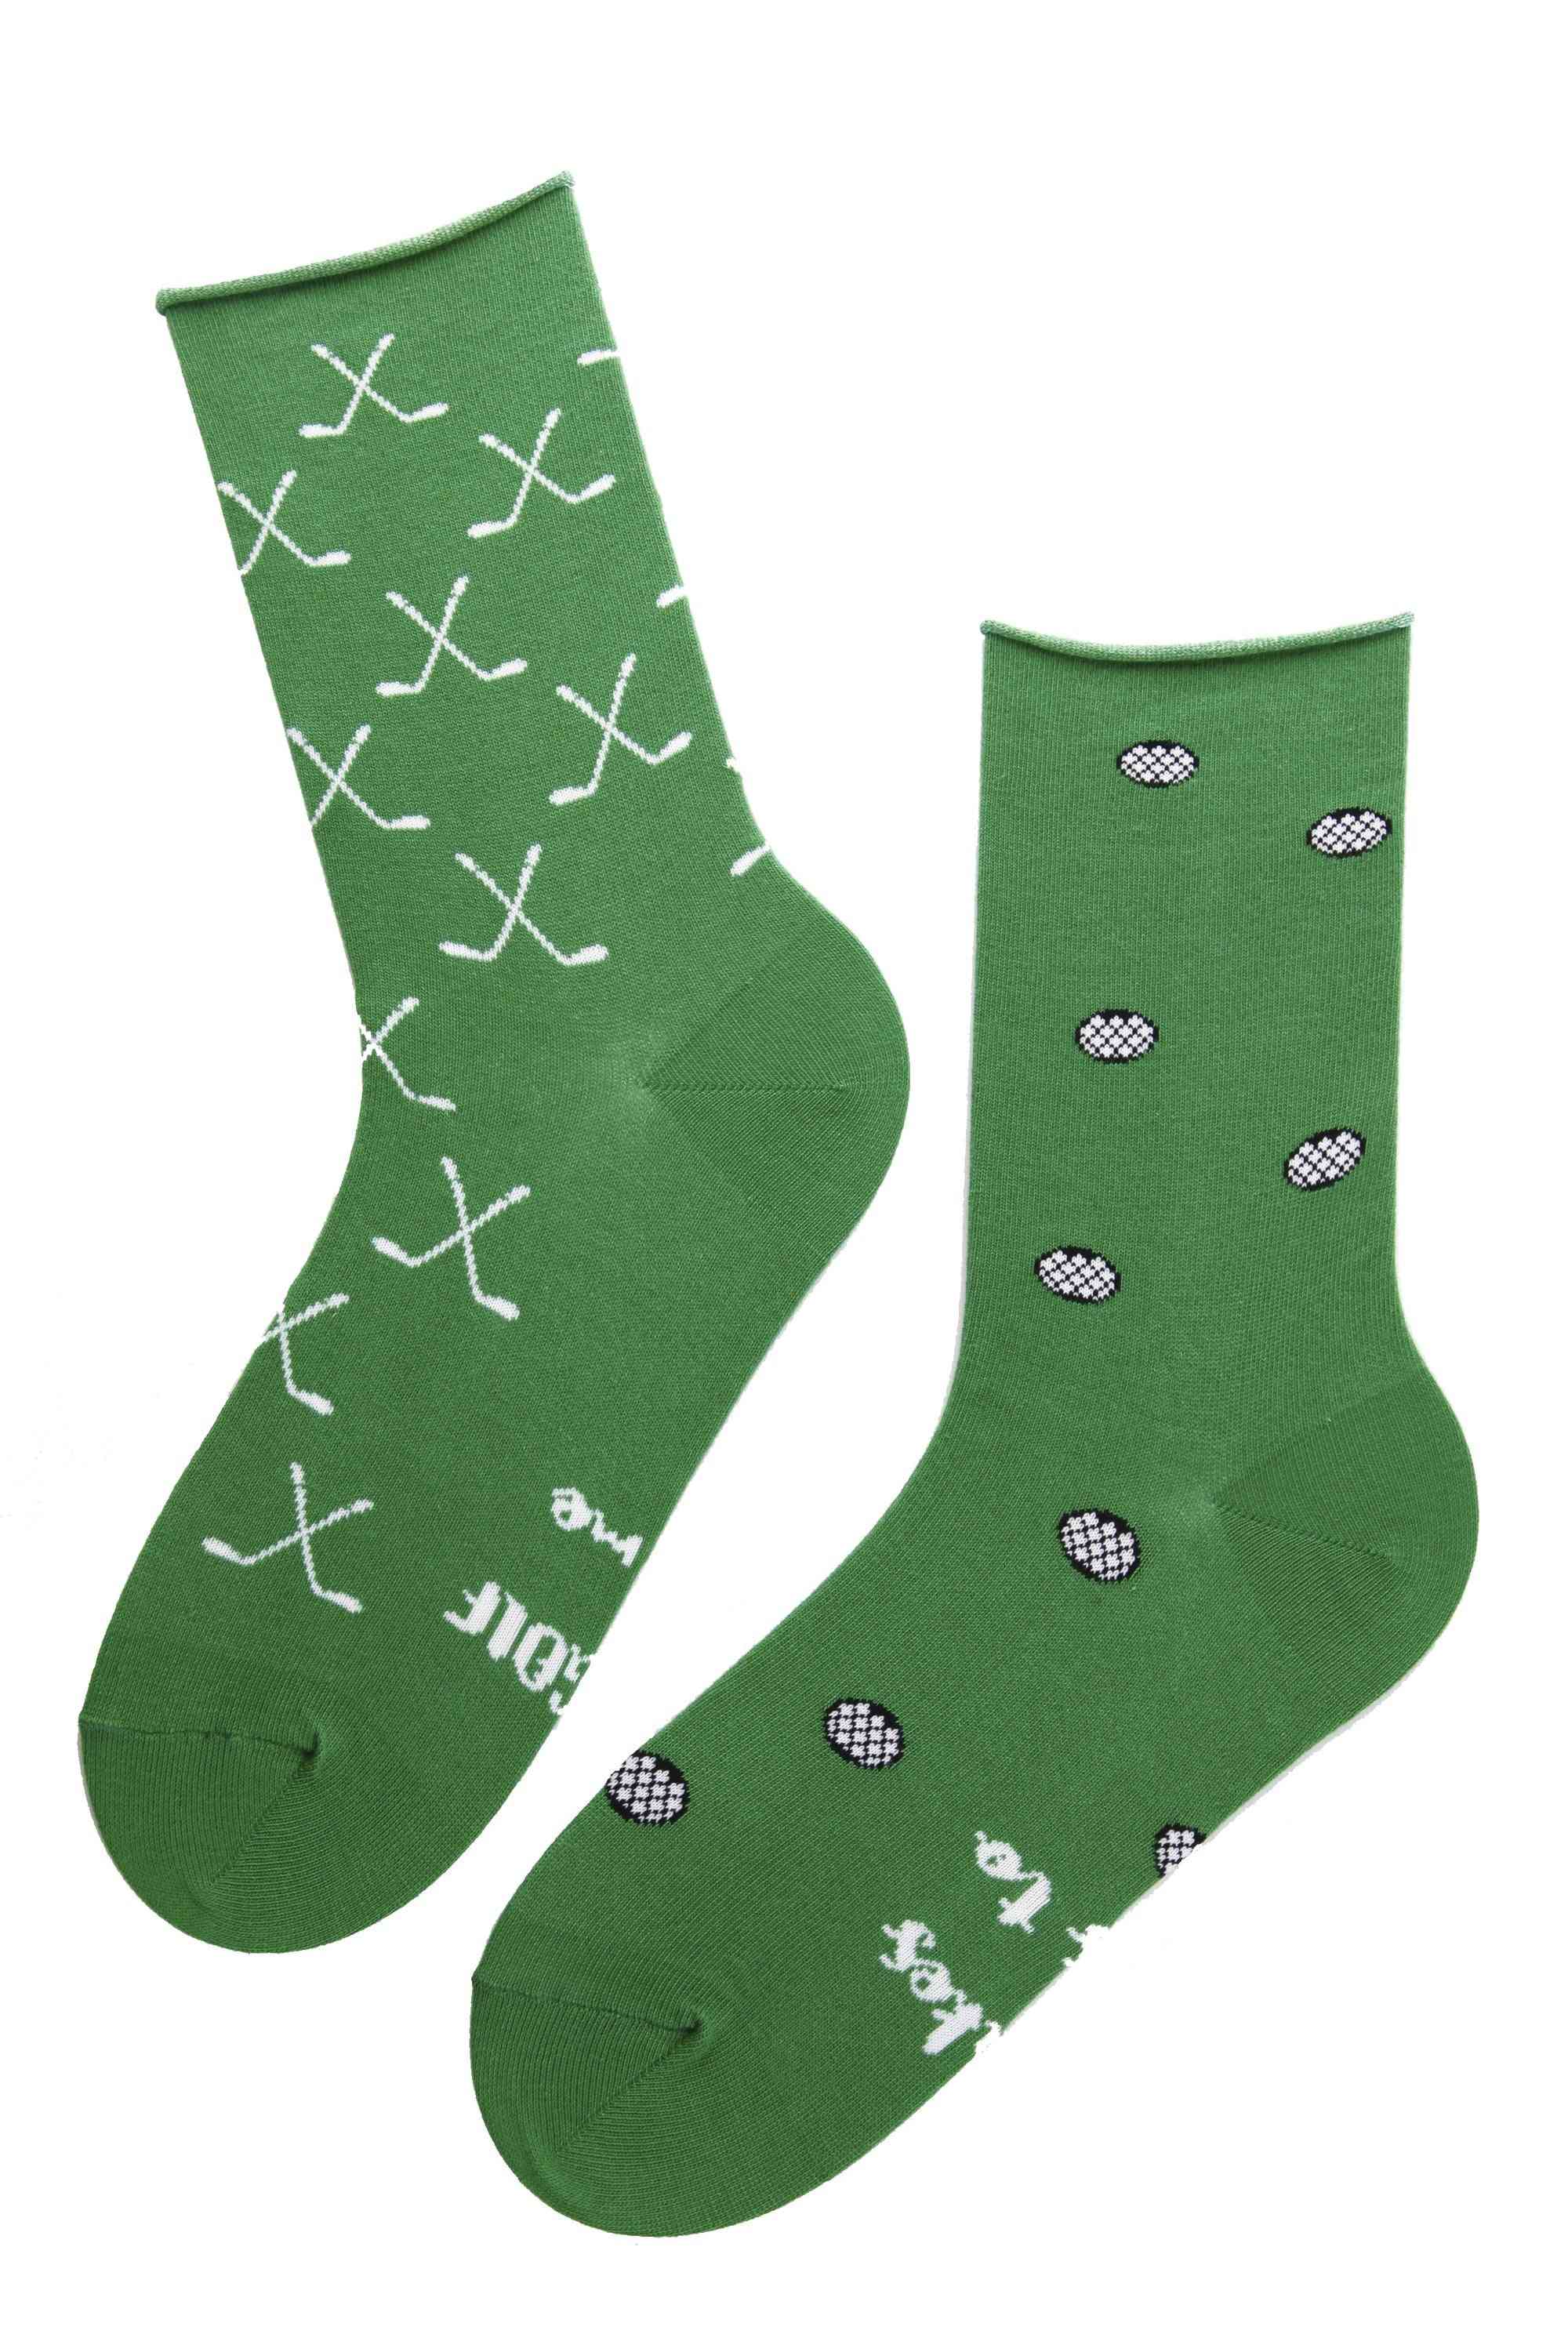 Printed Socks For Men